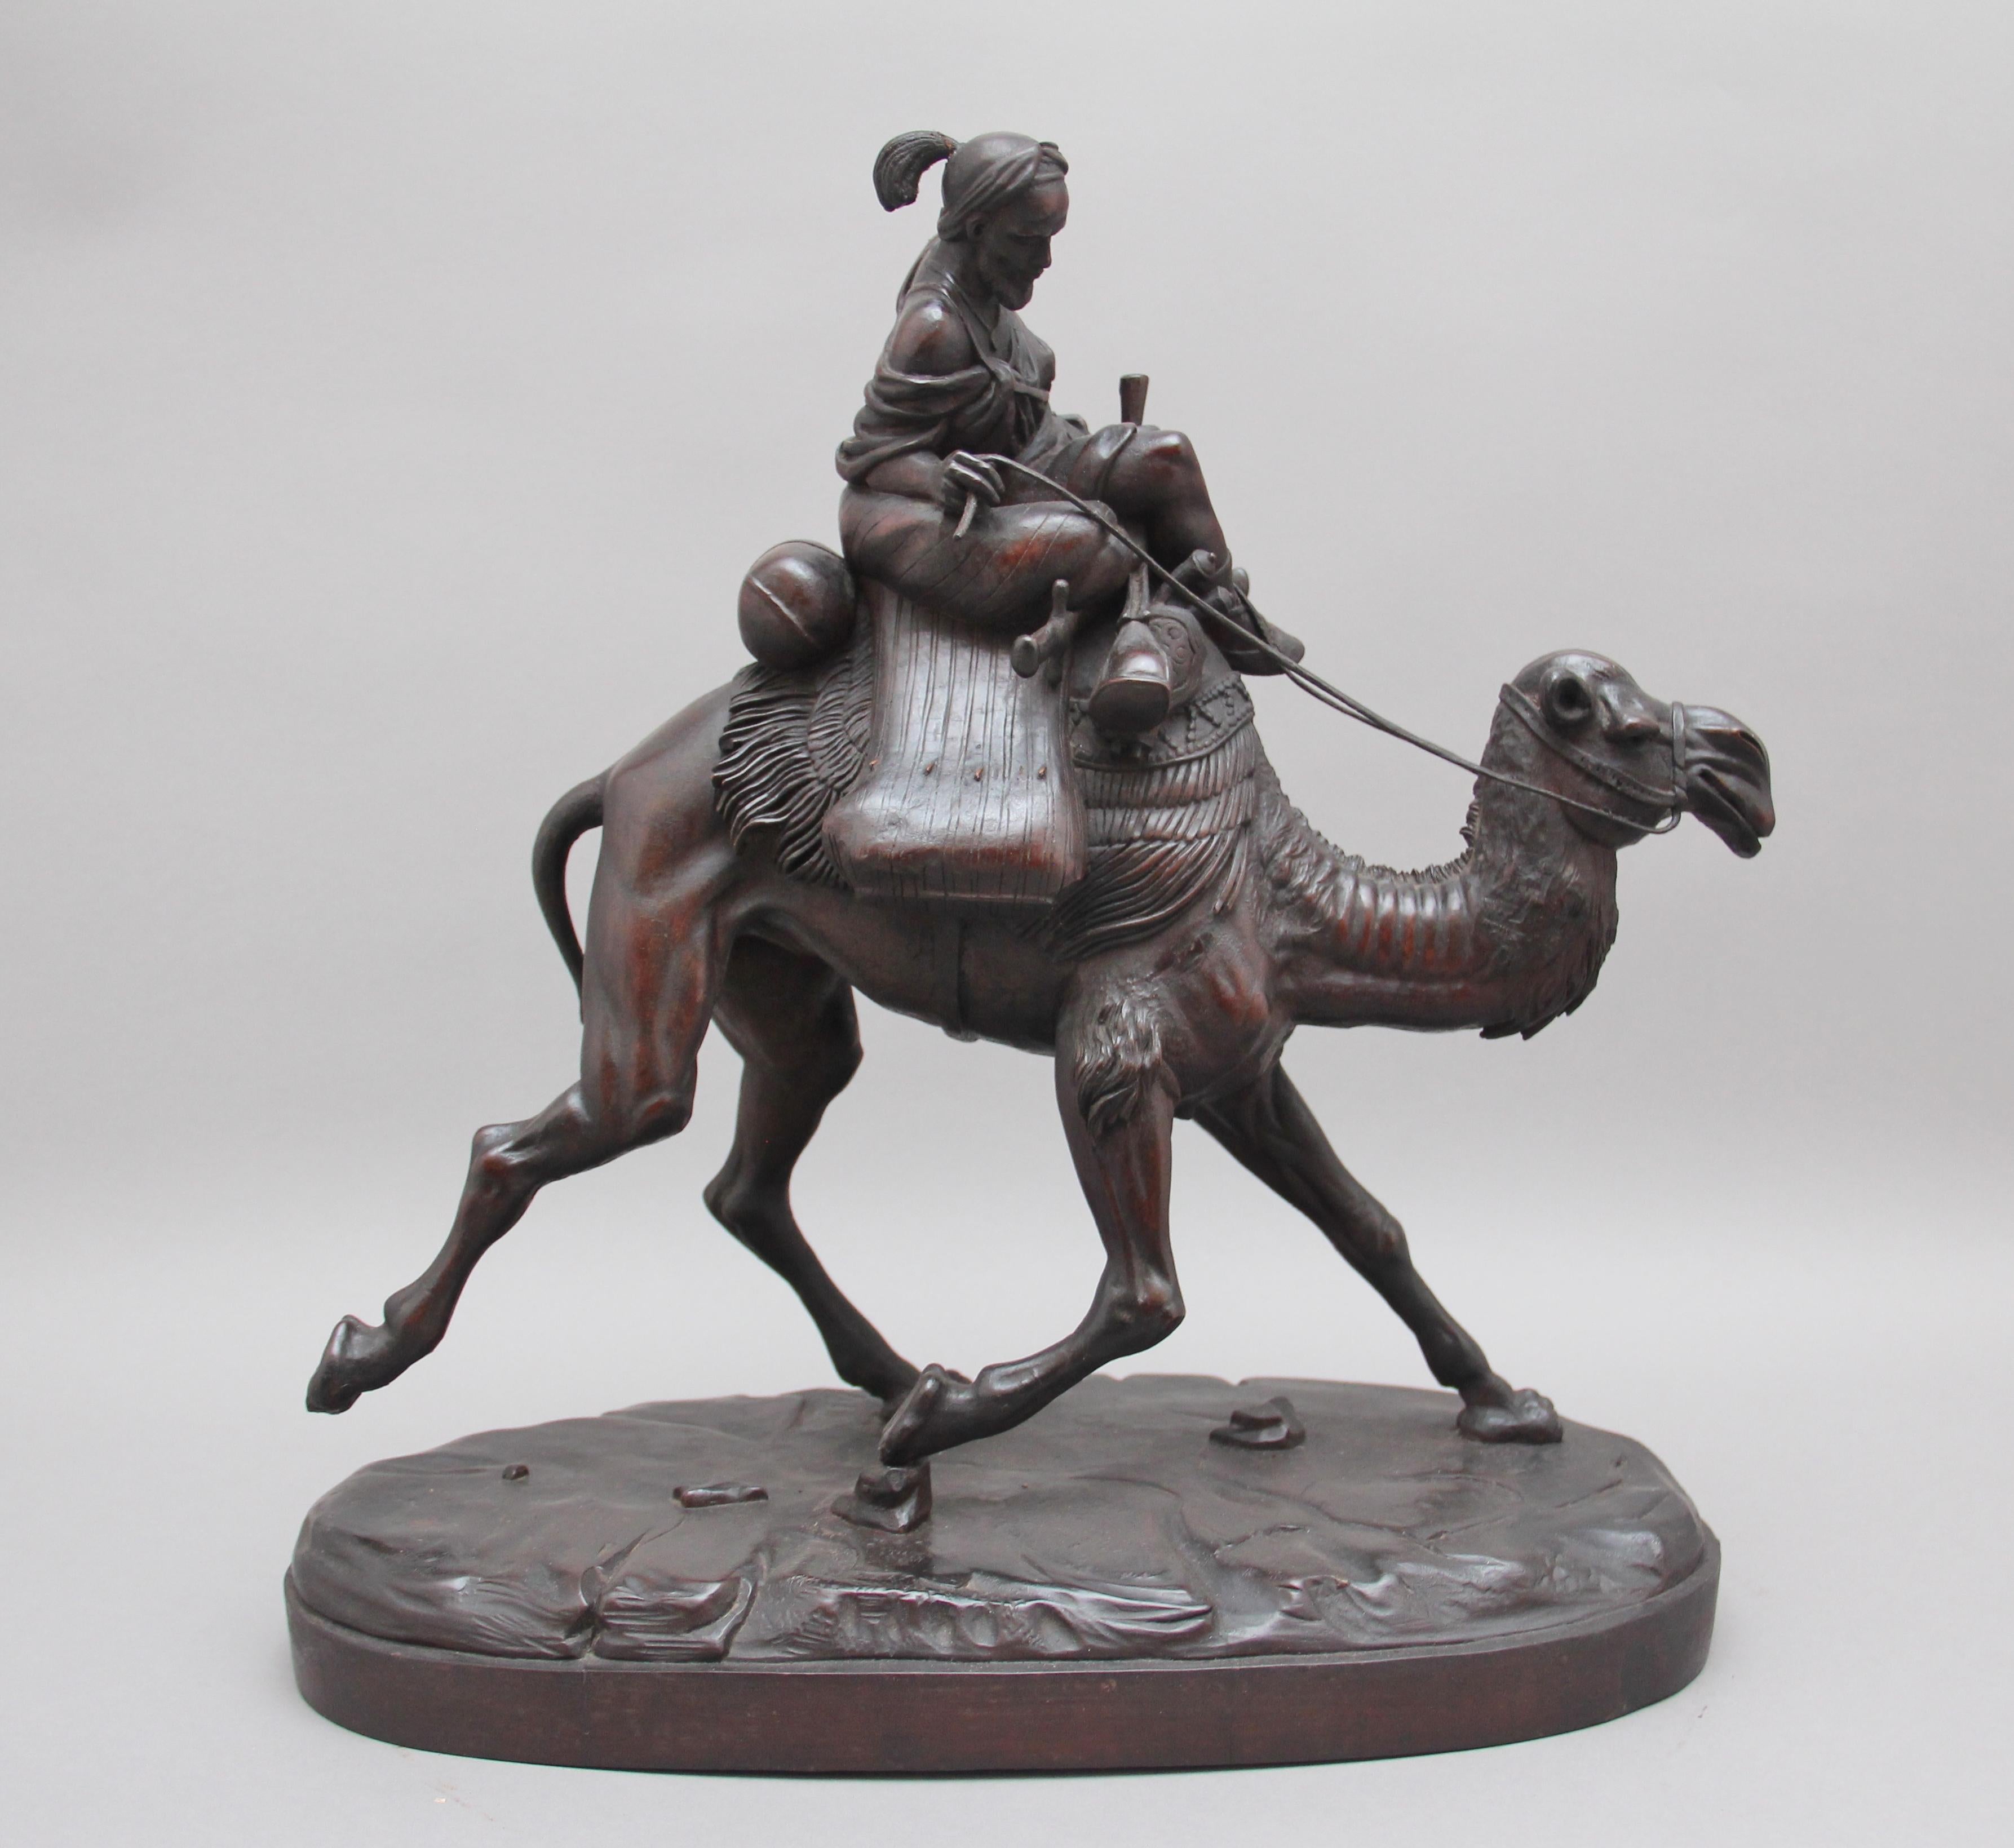 Eine sehr seltene hervorragende Qualität 19. Jahrhundert Schwarzwald Schnitzerei eines Arabers reitet ein Rennen Kamel, die Qualität und Ausführung der Schnitzerei ist fabelhaft. Kamelrennen werden auf der arabischen Halbinsel seit Jahrhunderten